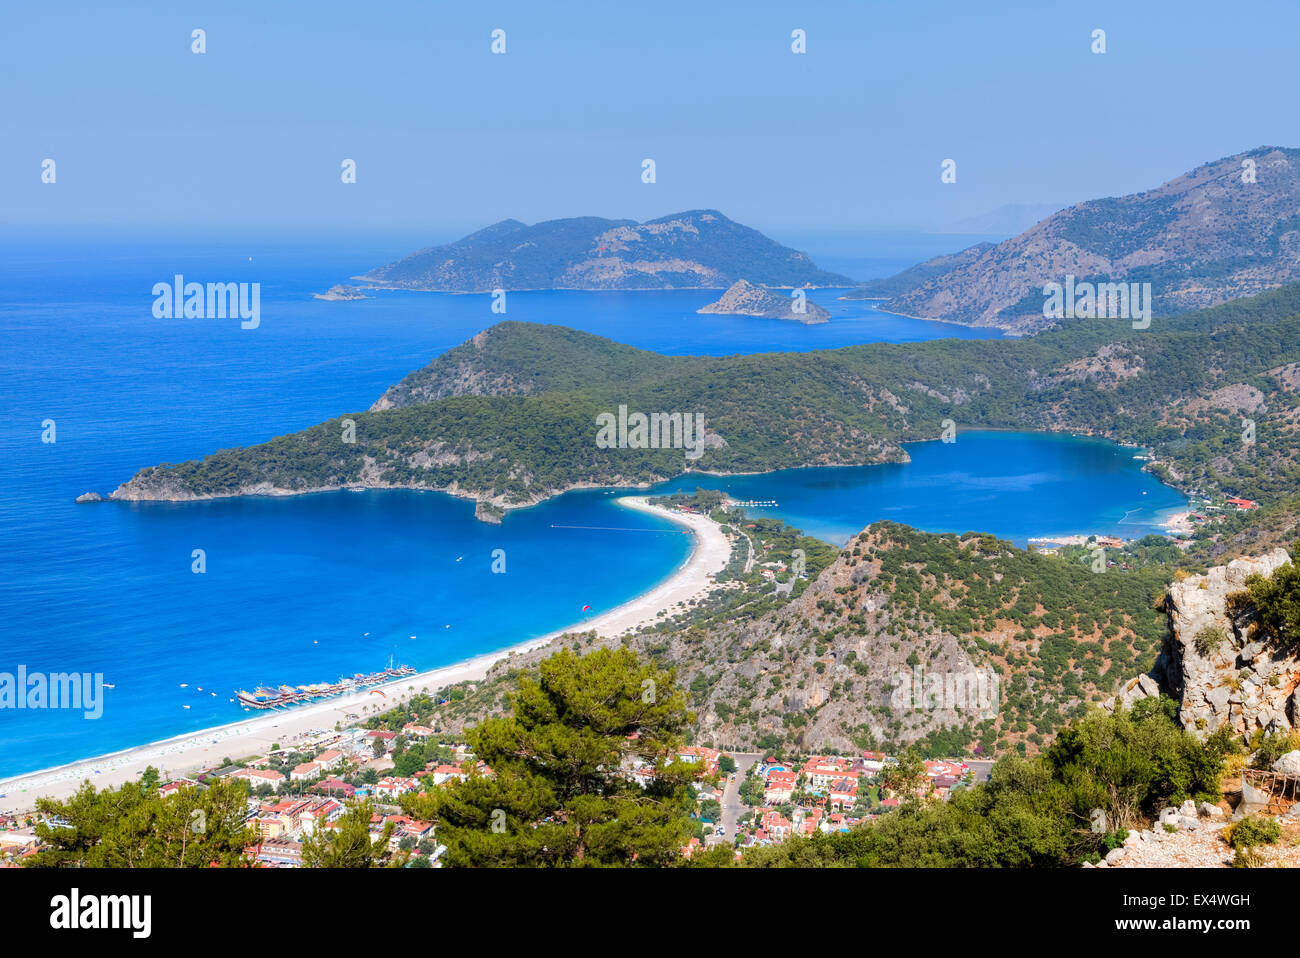 Oeluedeniz, Fethiye, Mugla, Aegean, Turkey Stock Photo